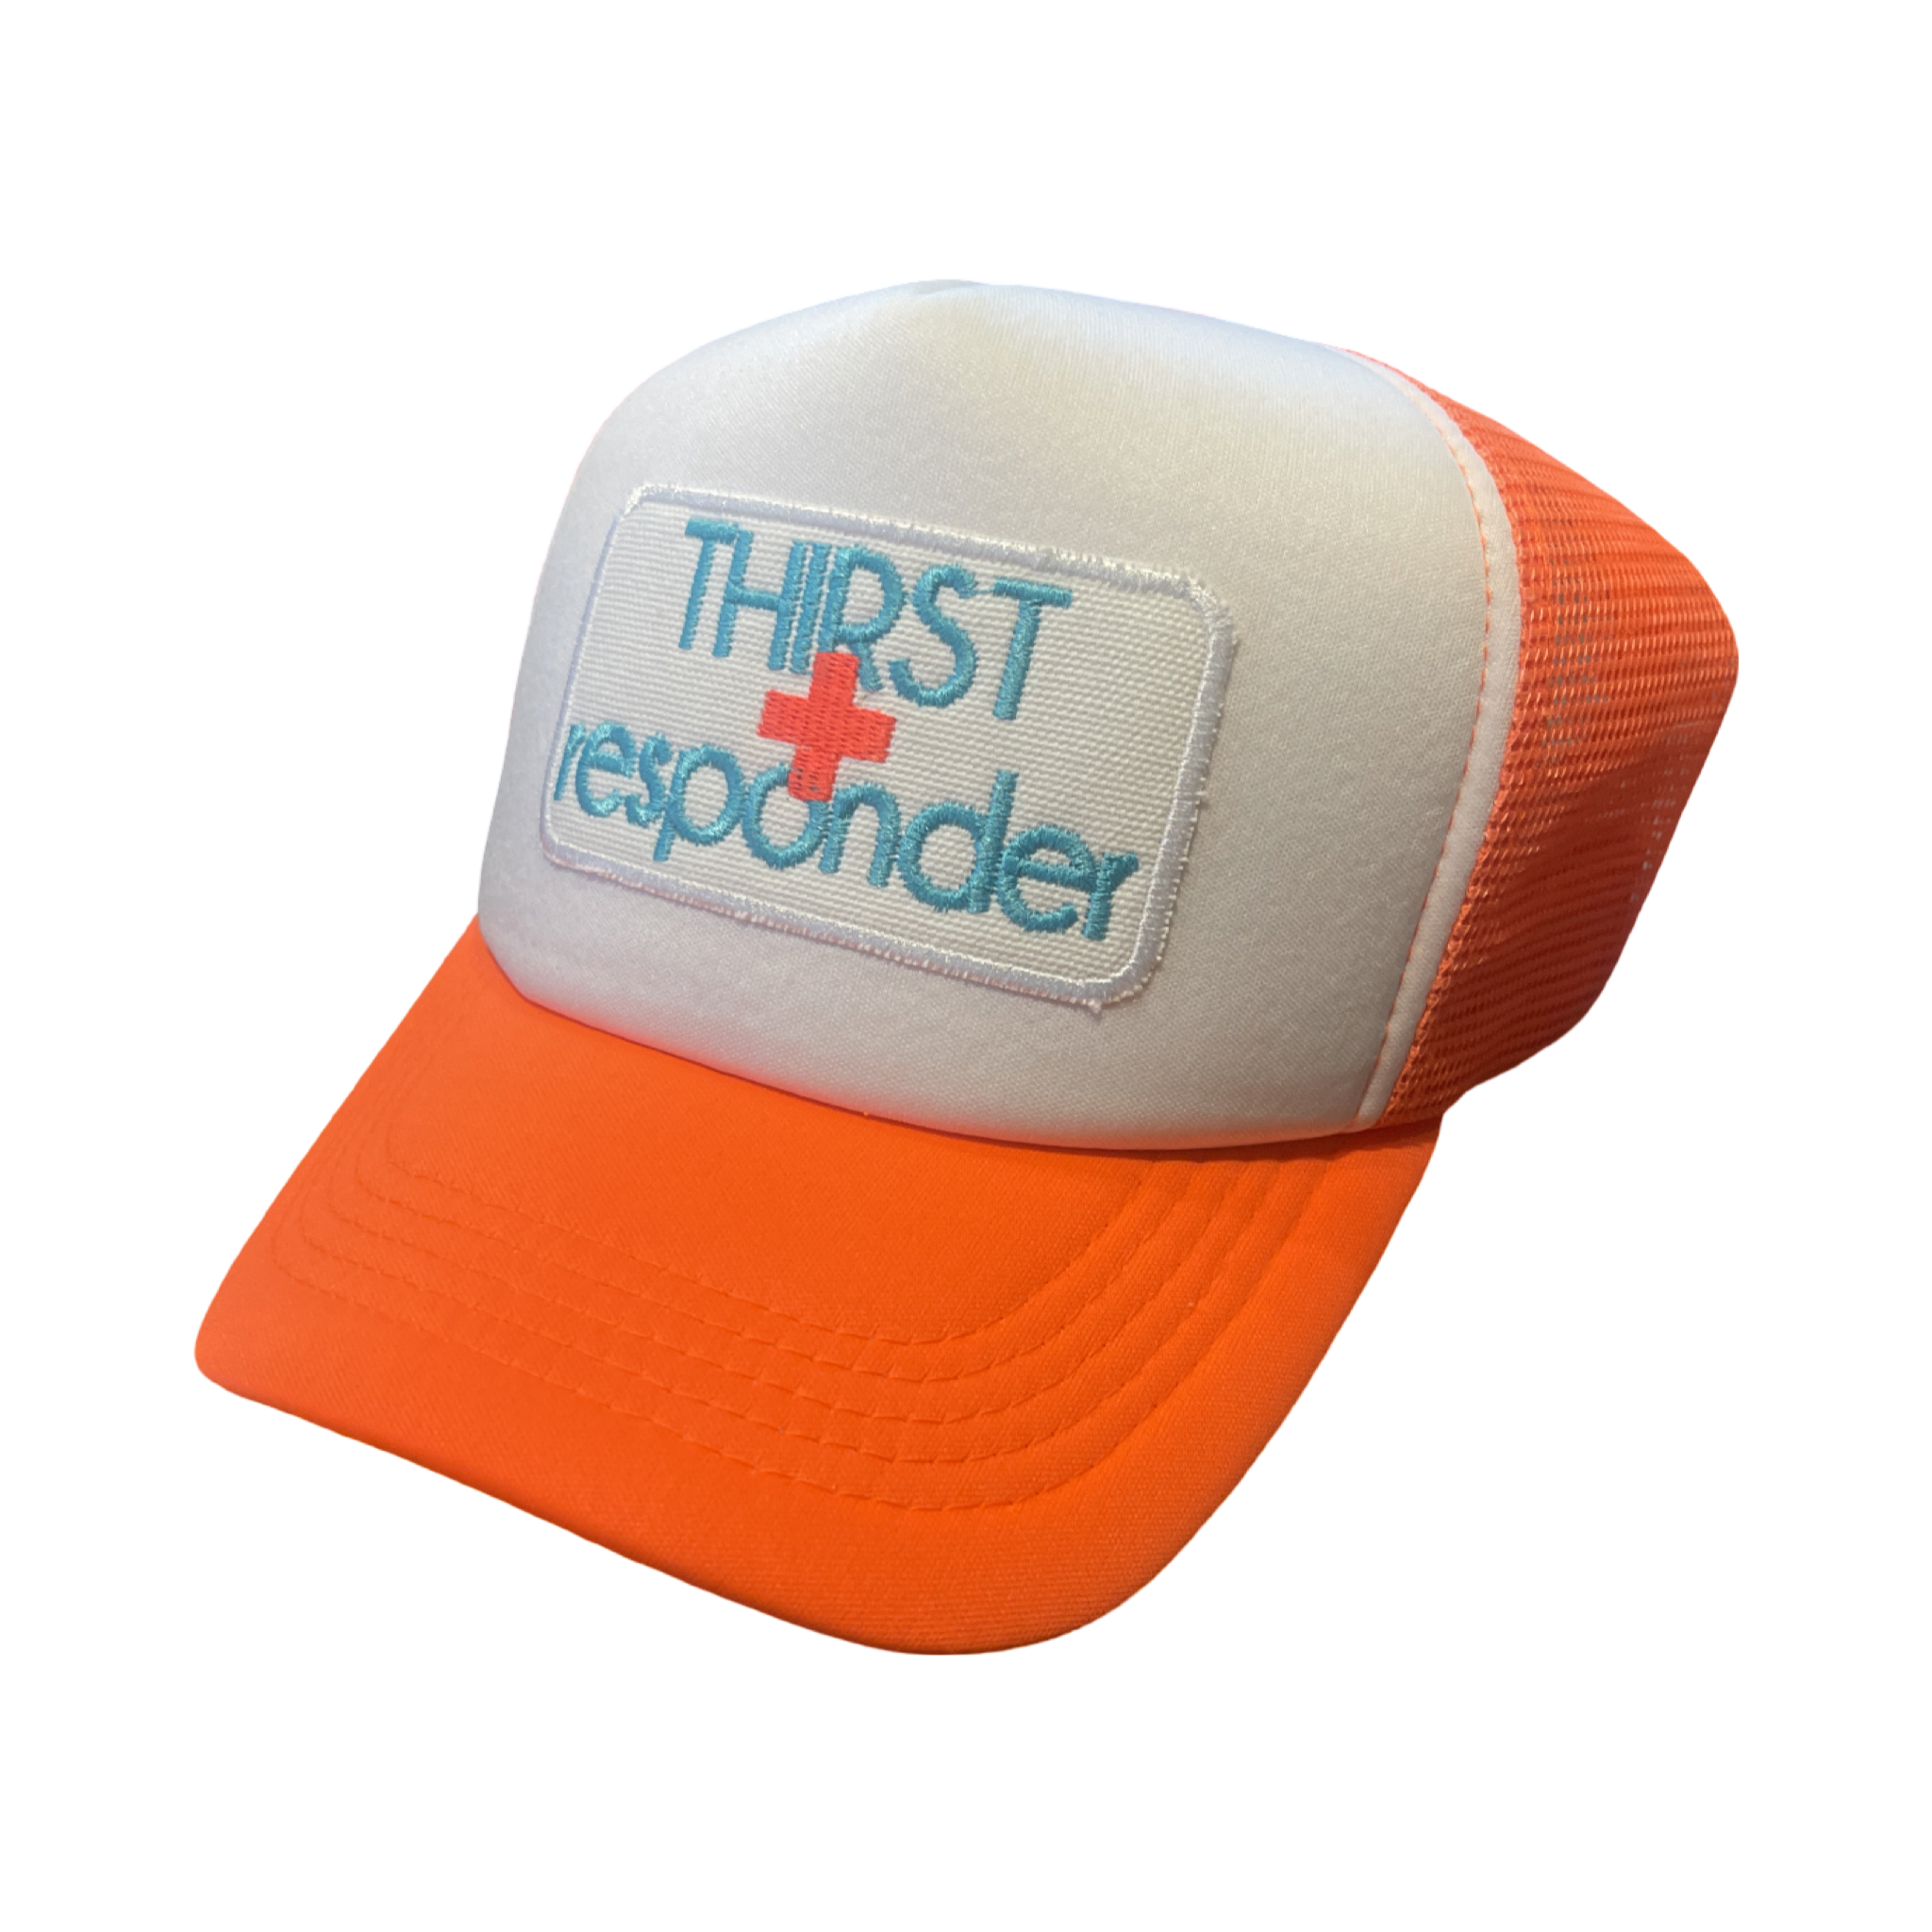 Trucker Hat Foam "Thirst Responder"